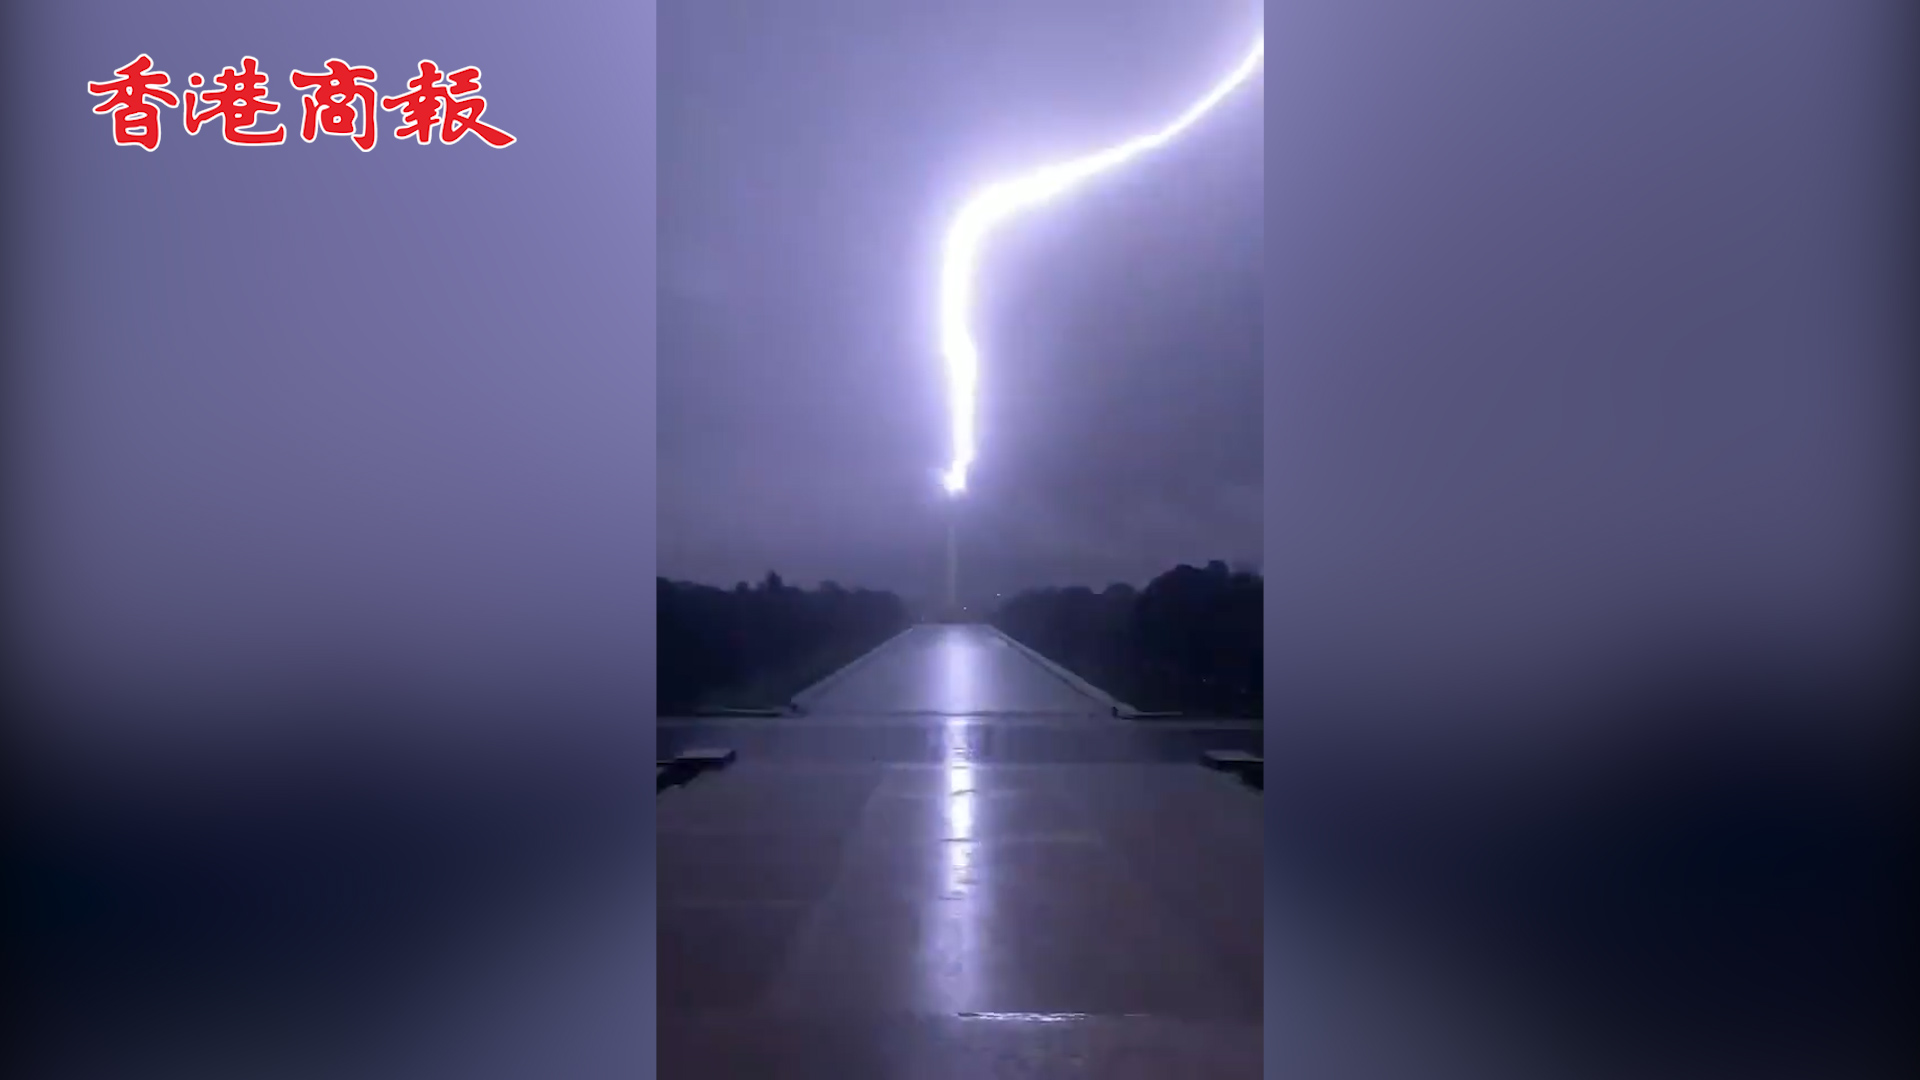 有片丨美國華盛頓紀念碑被雷劈 閃電從天而降炸穿夜空